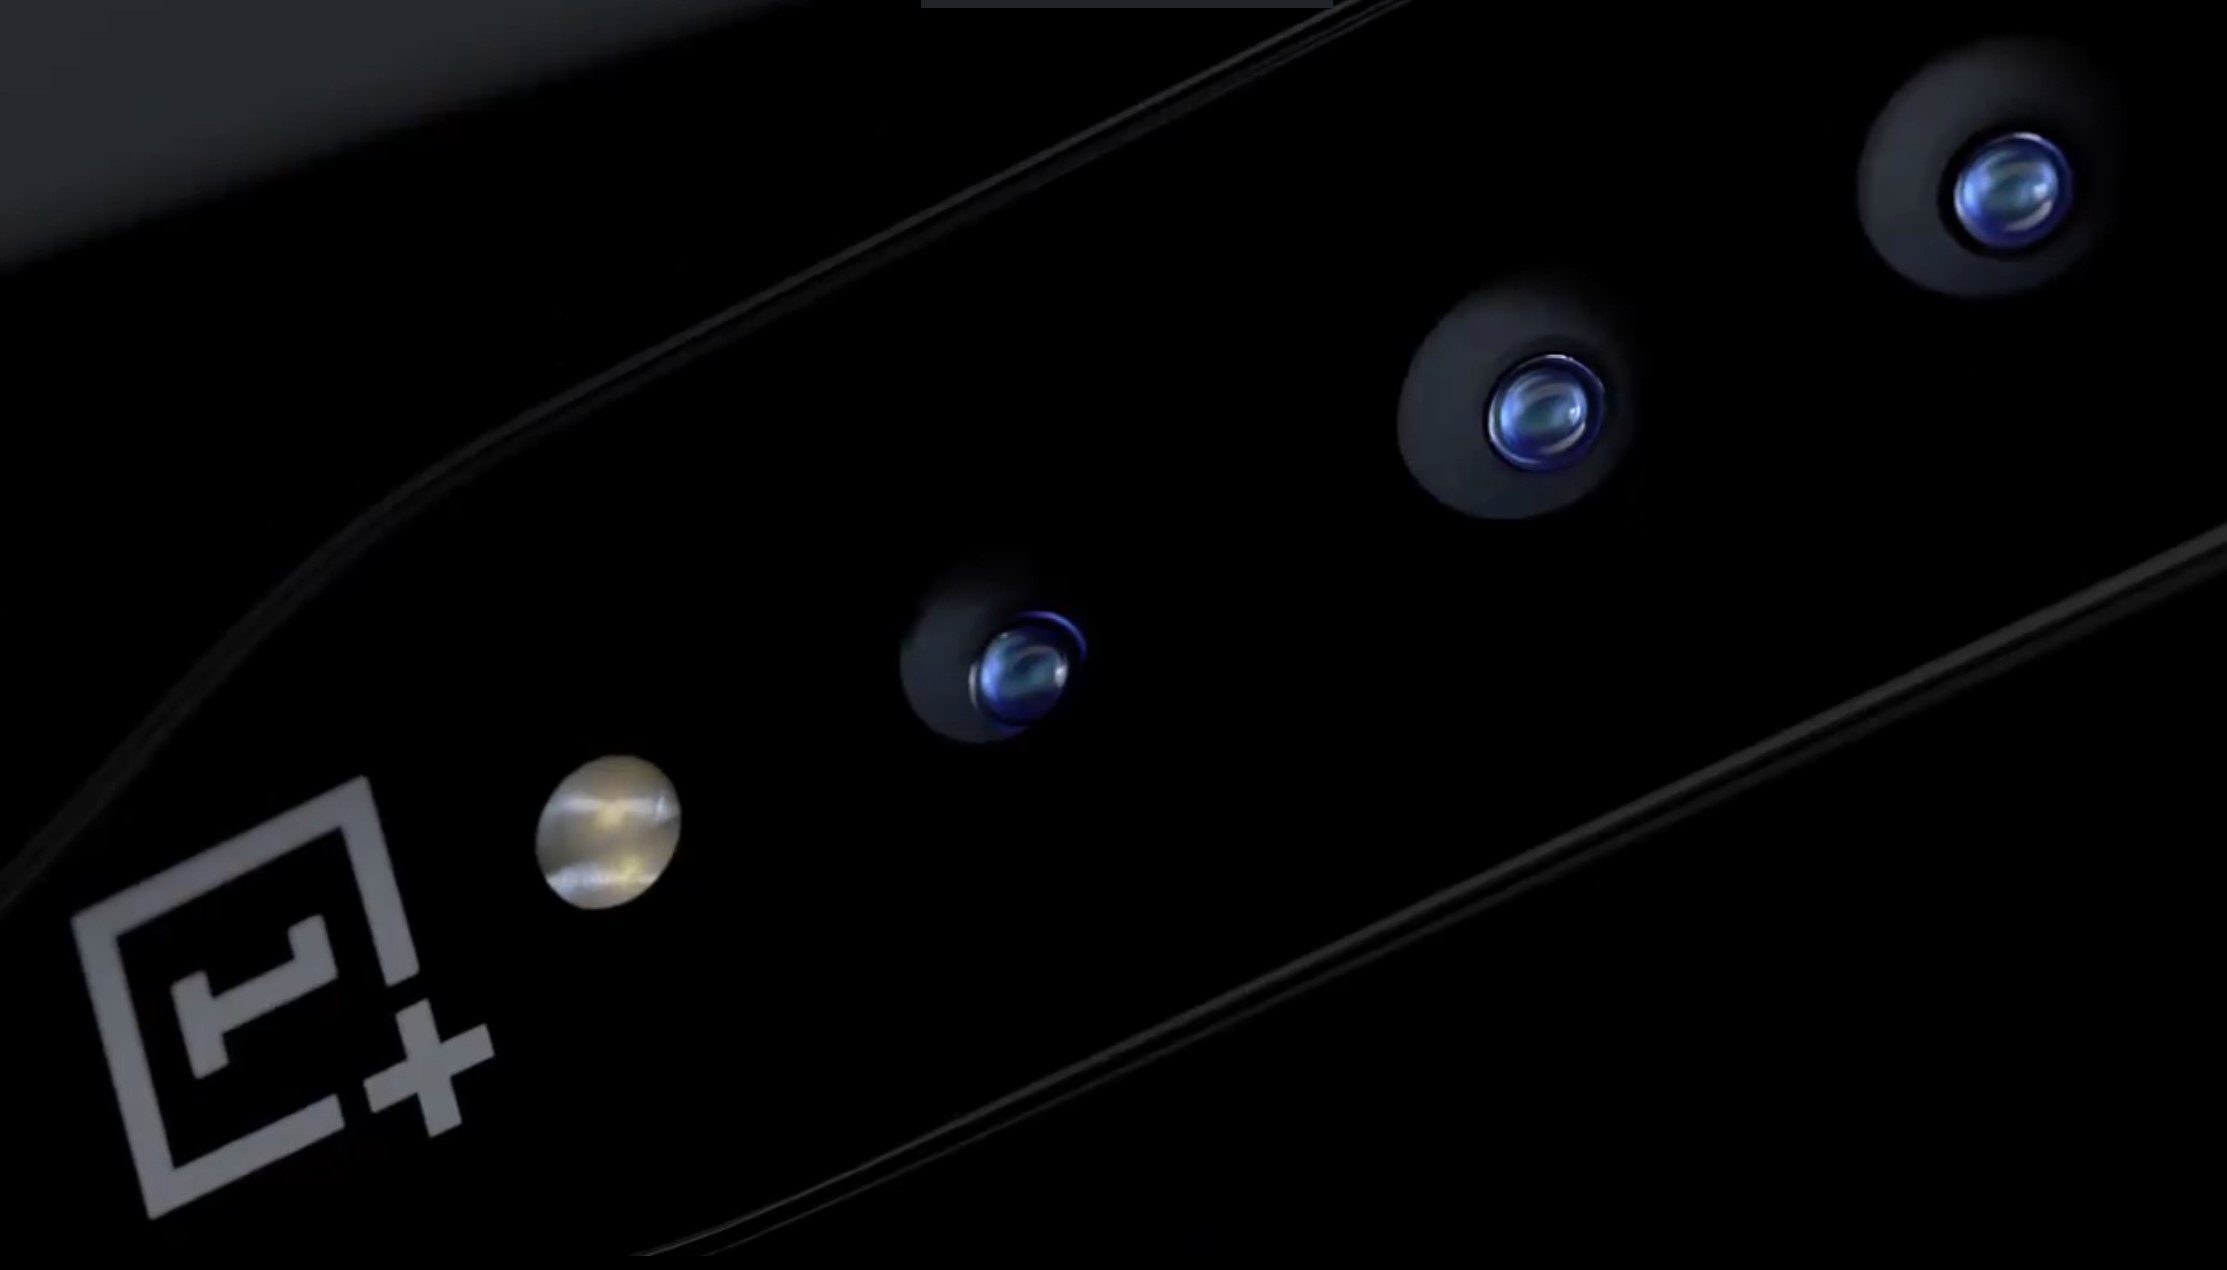 Το teaser smartphone ConceptOne της OnePlus προτείνει πρωτοποριακή τεχνολογία "αόρατης κάμερας" και τεχνολογία γυαλιού που μετατοπίζει το χρώμα